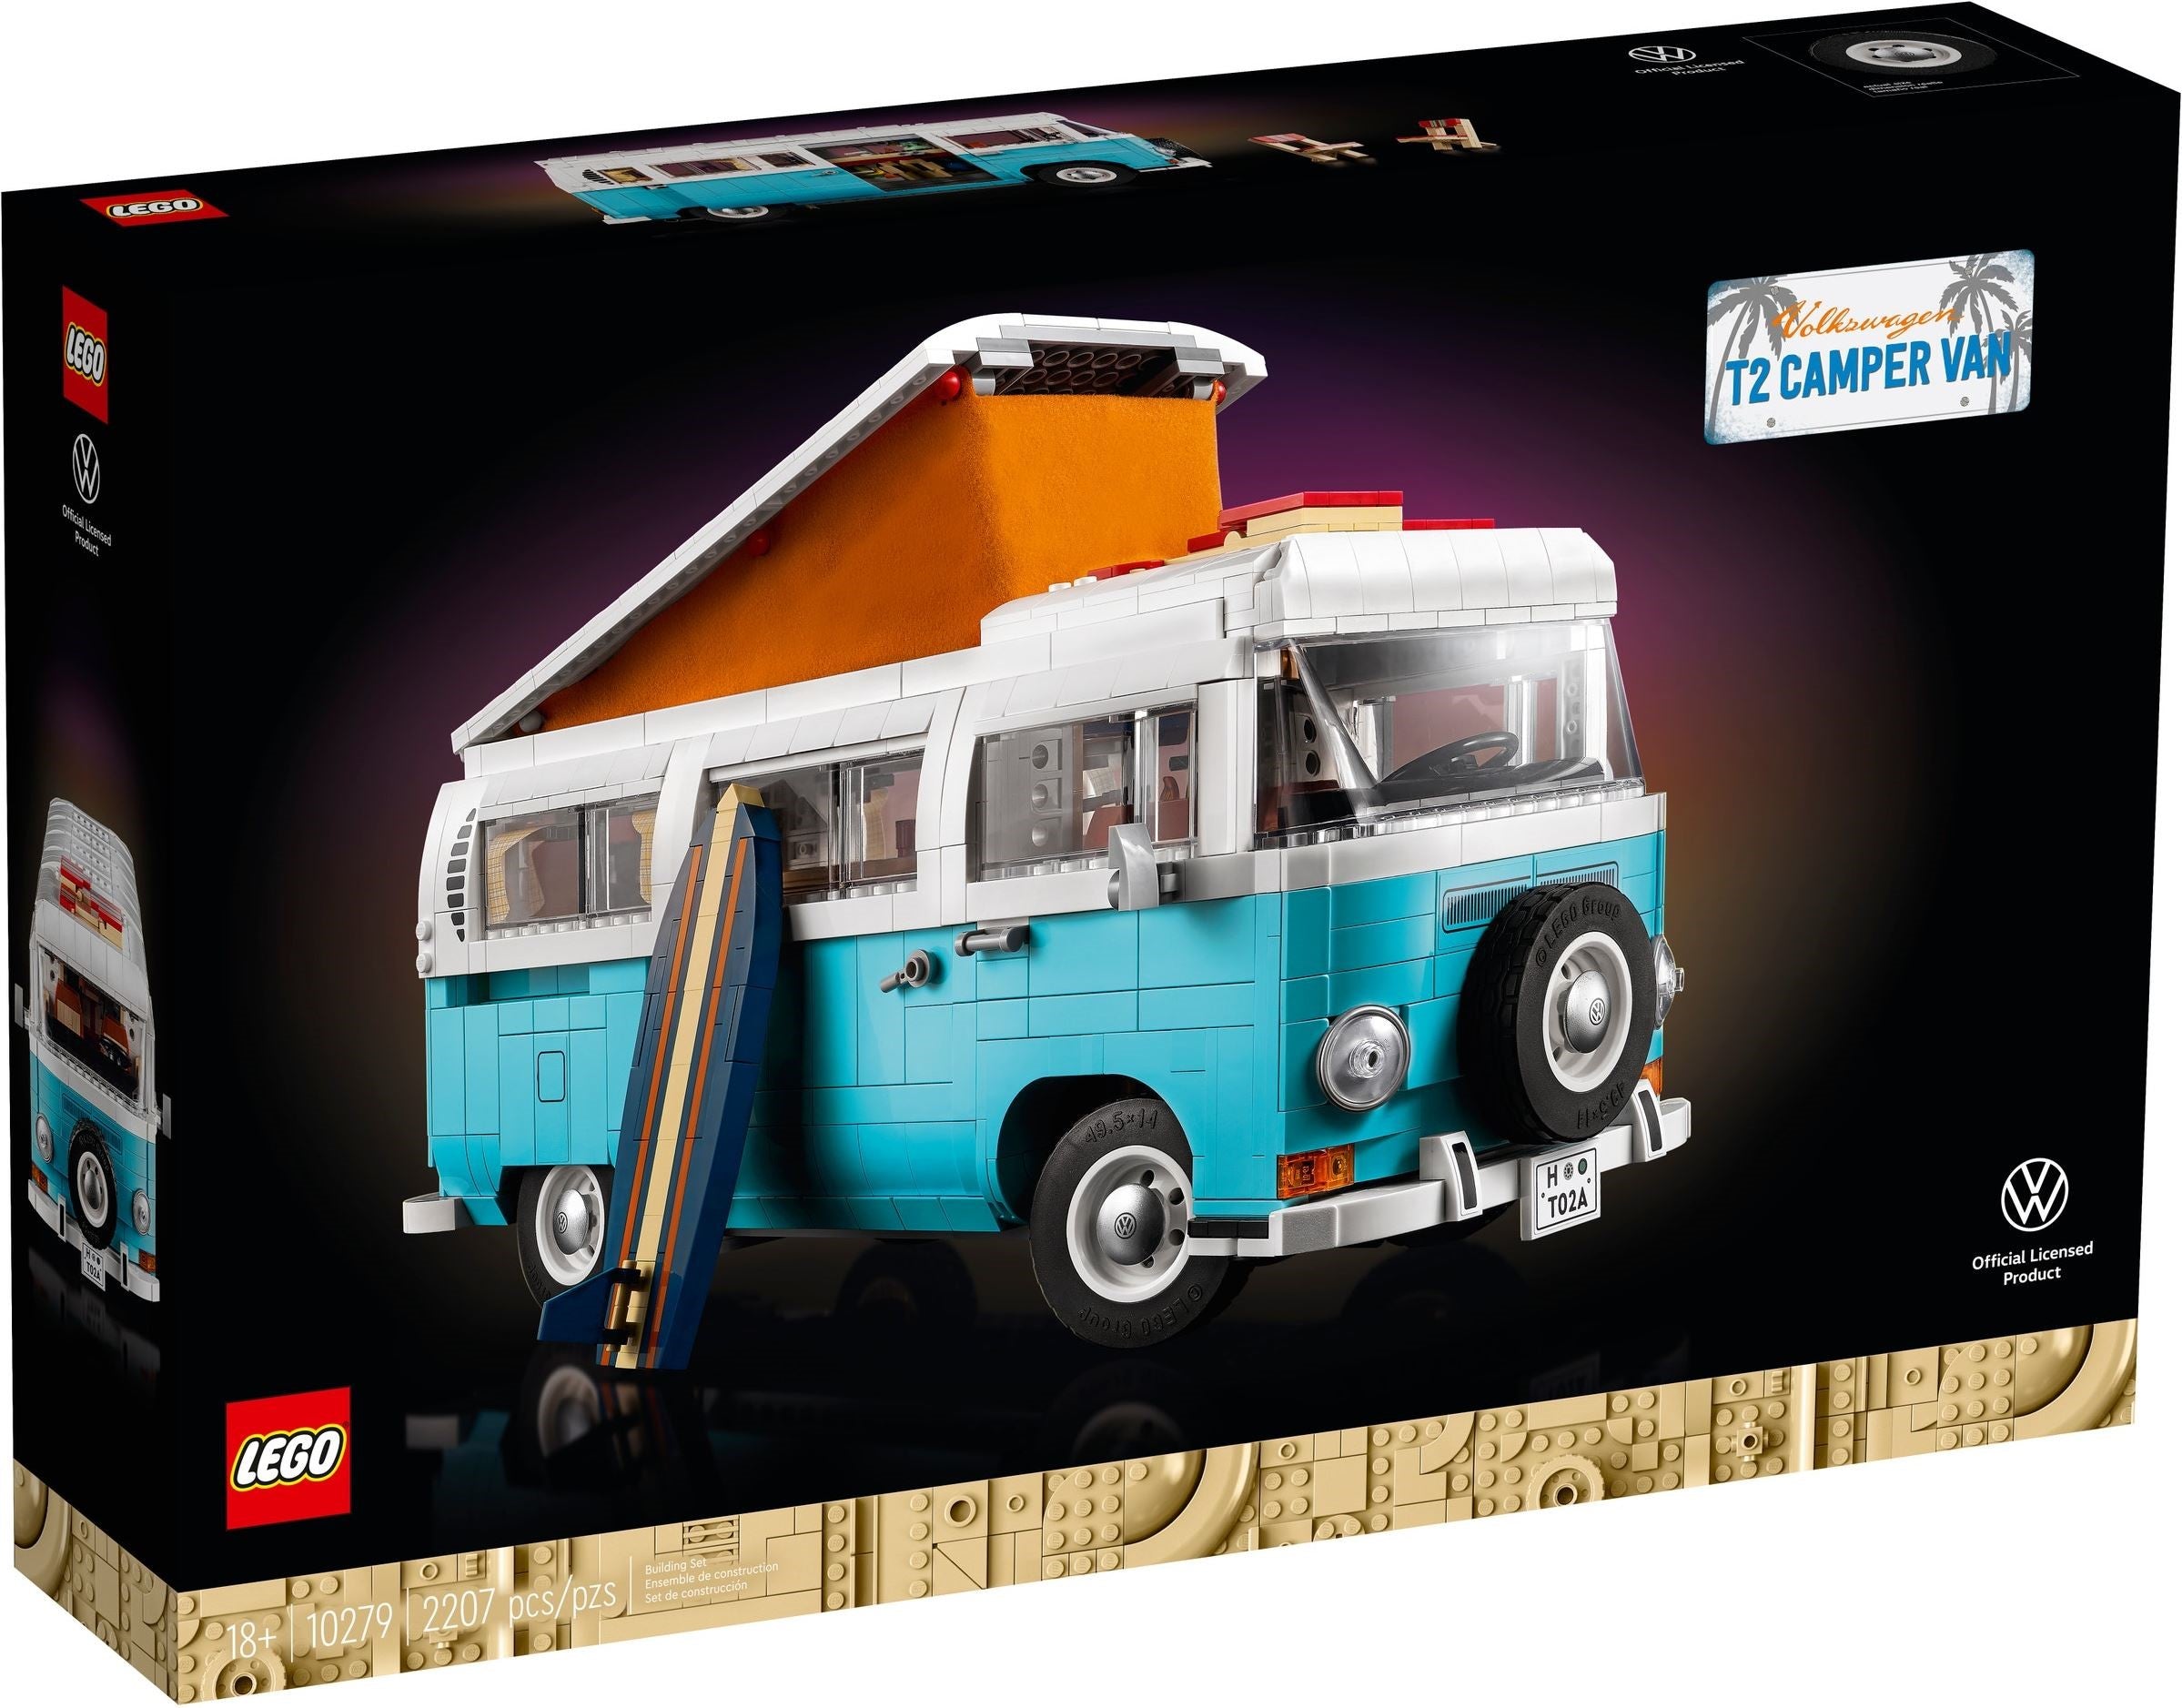 Lego Exclusive 10279 - Volkswagen T2 Camper Van